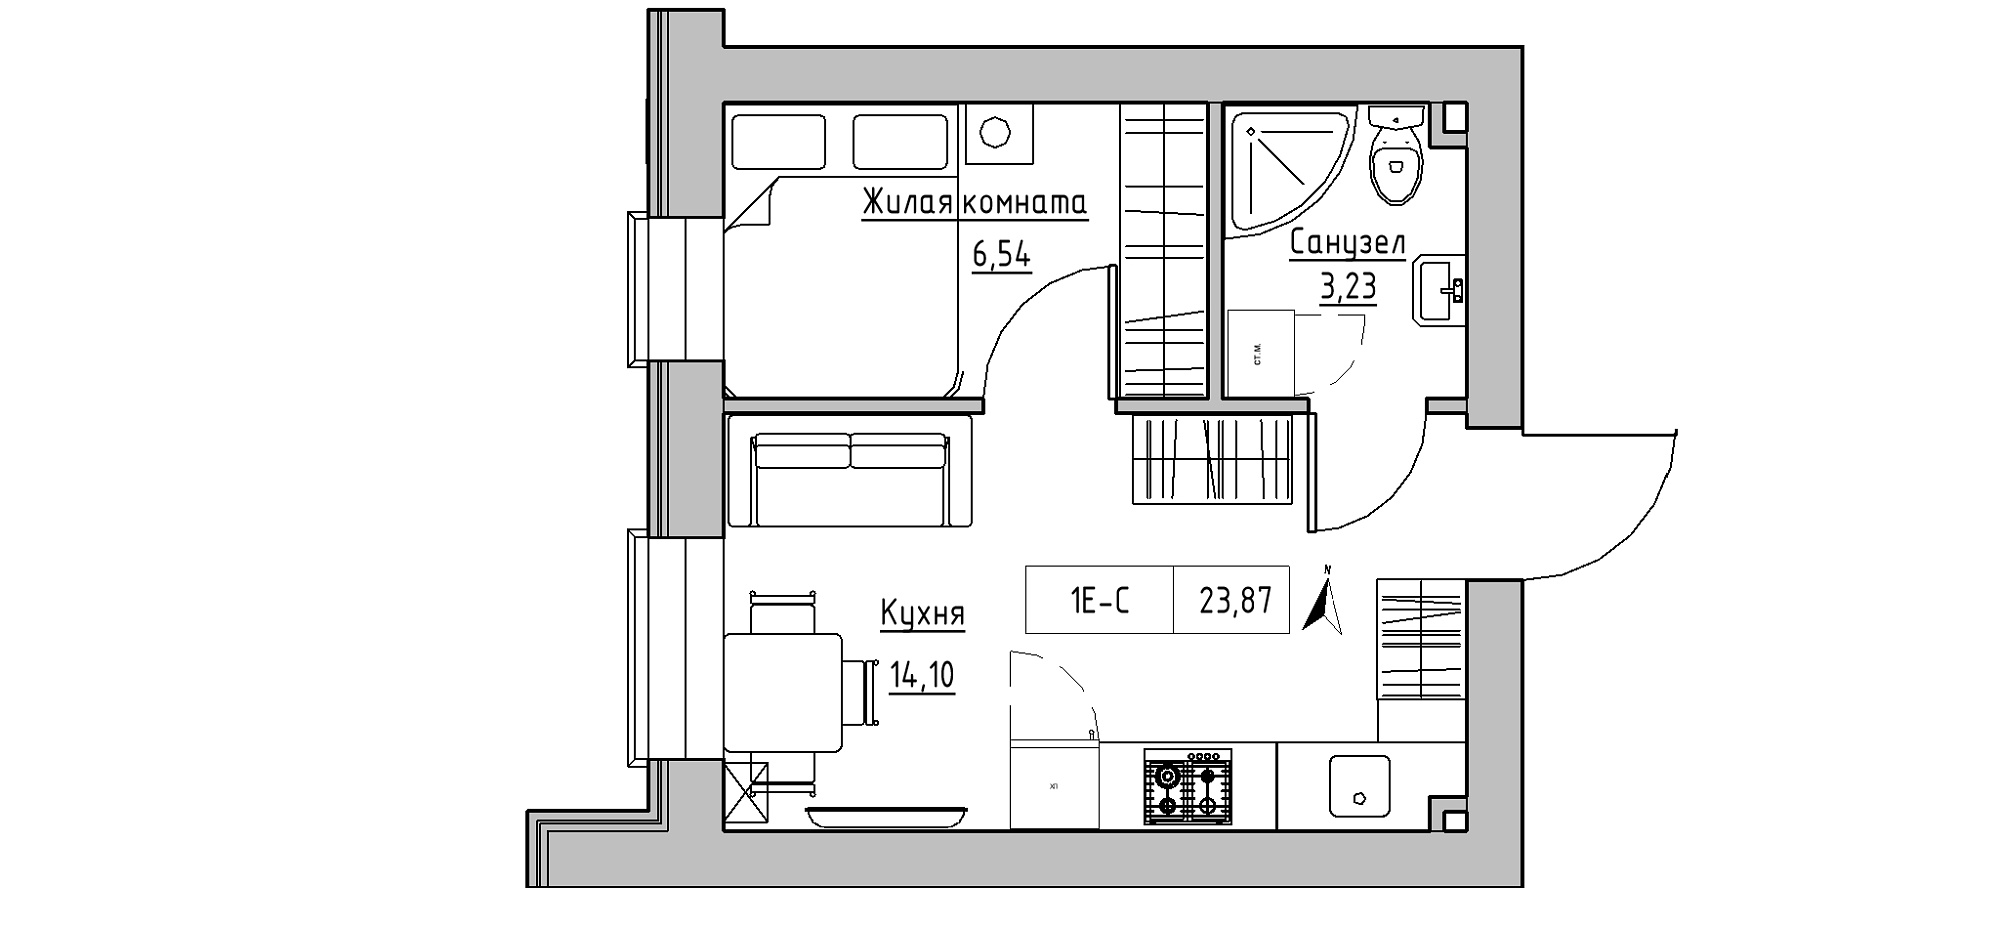 Планування 1-к квартира площею 23.87м2, KS-020-03/0012.